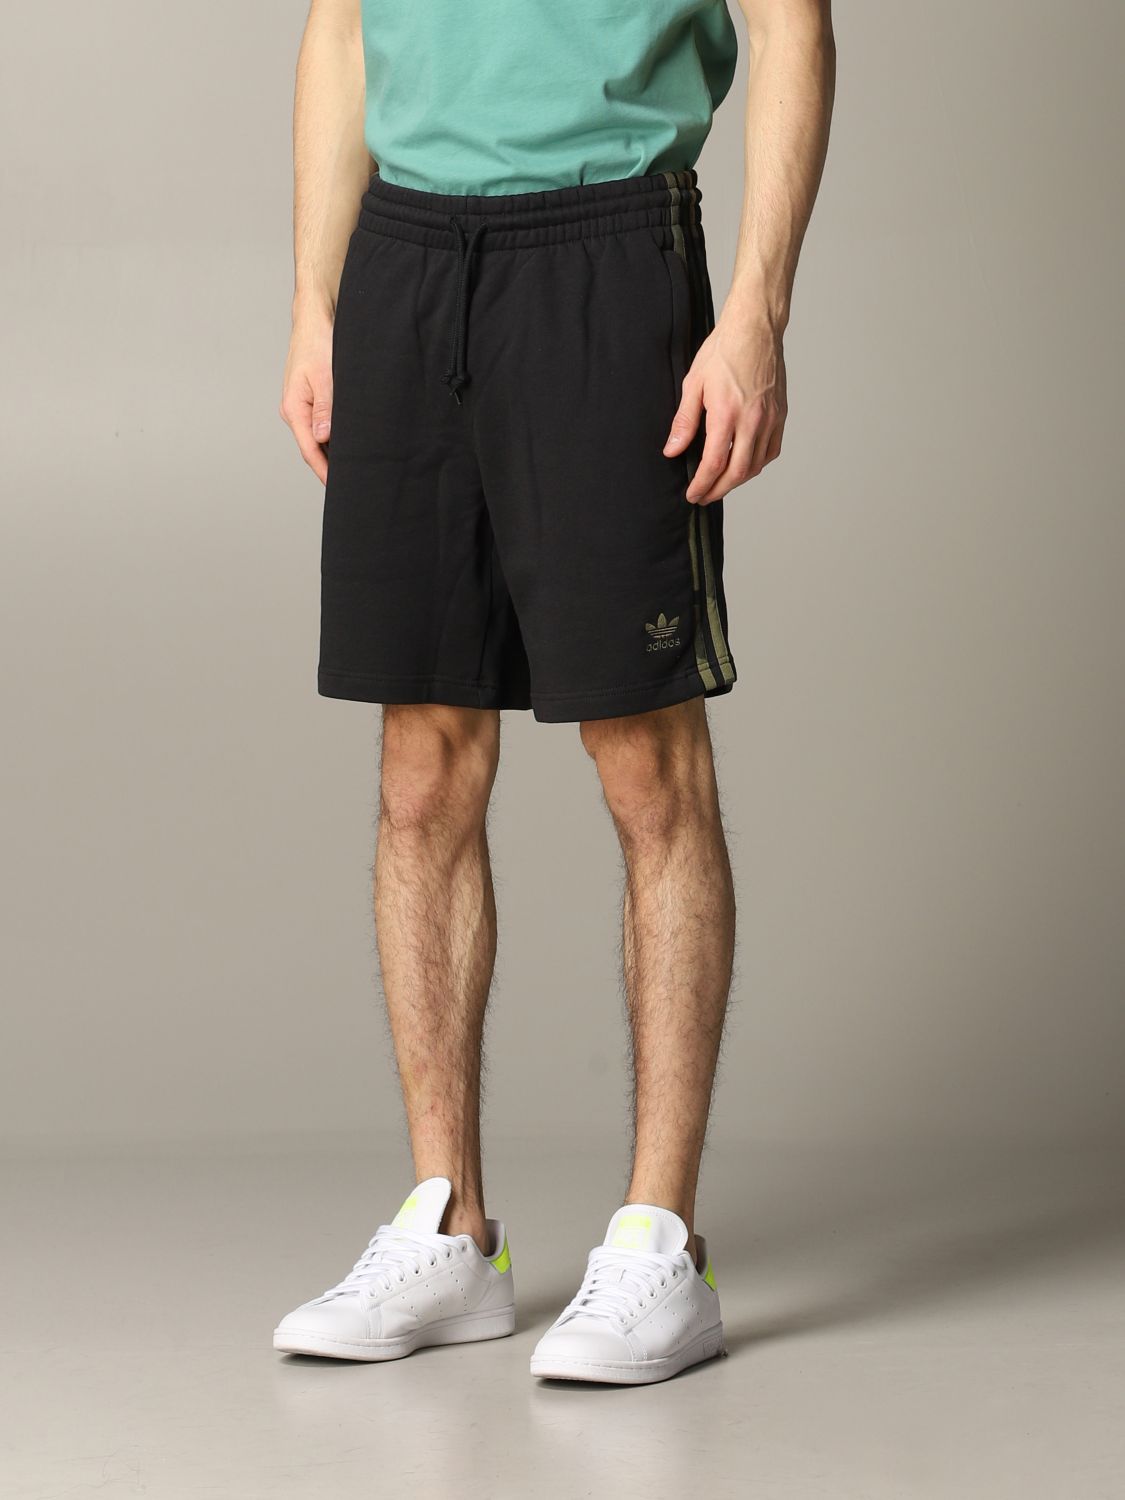 jogger shorts adidas